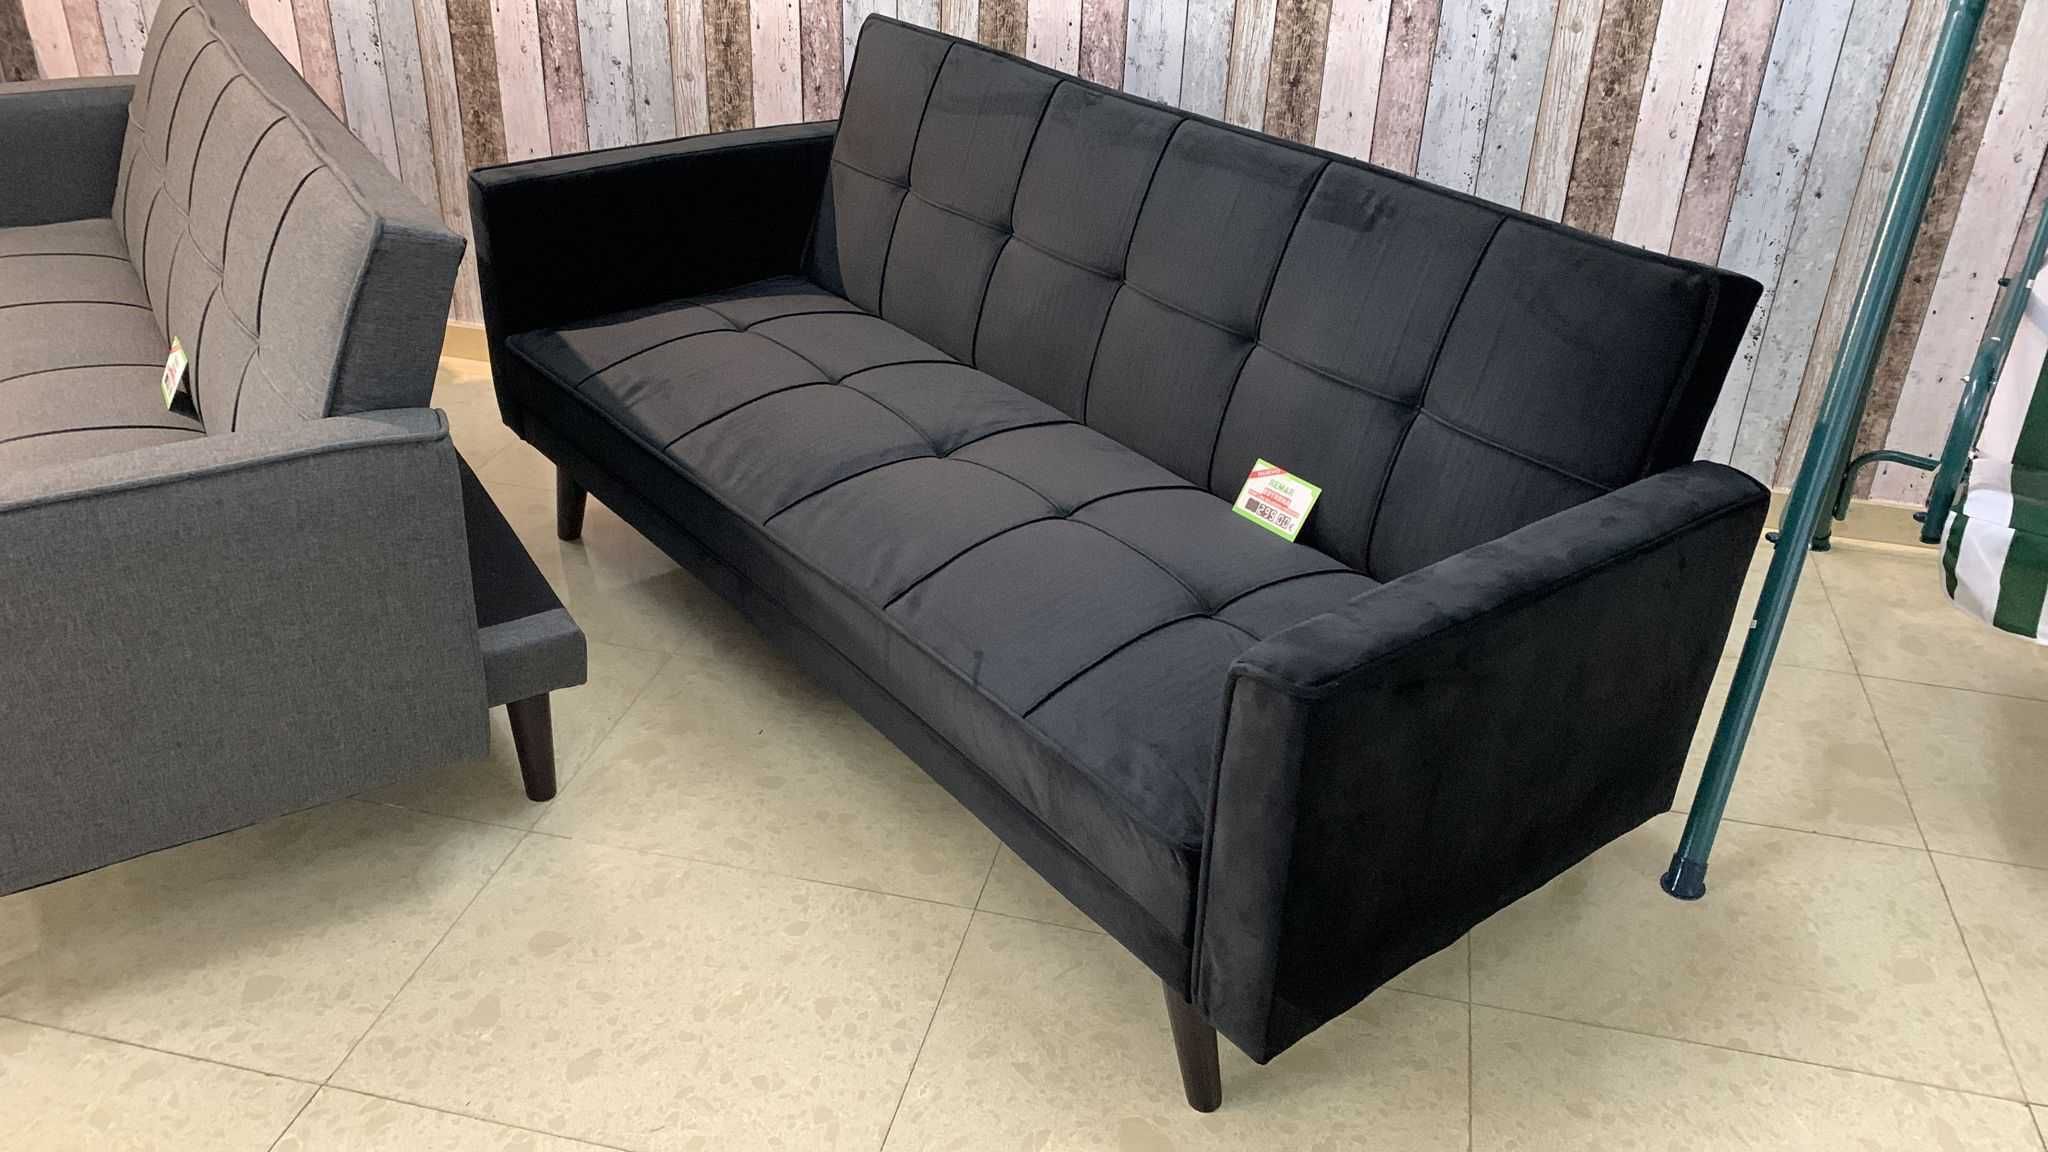 Novo sofá cama com envio grátis